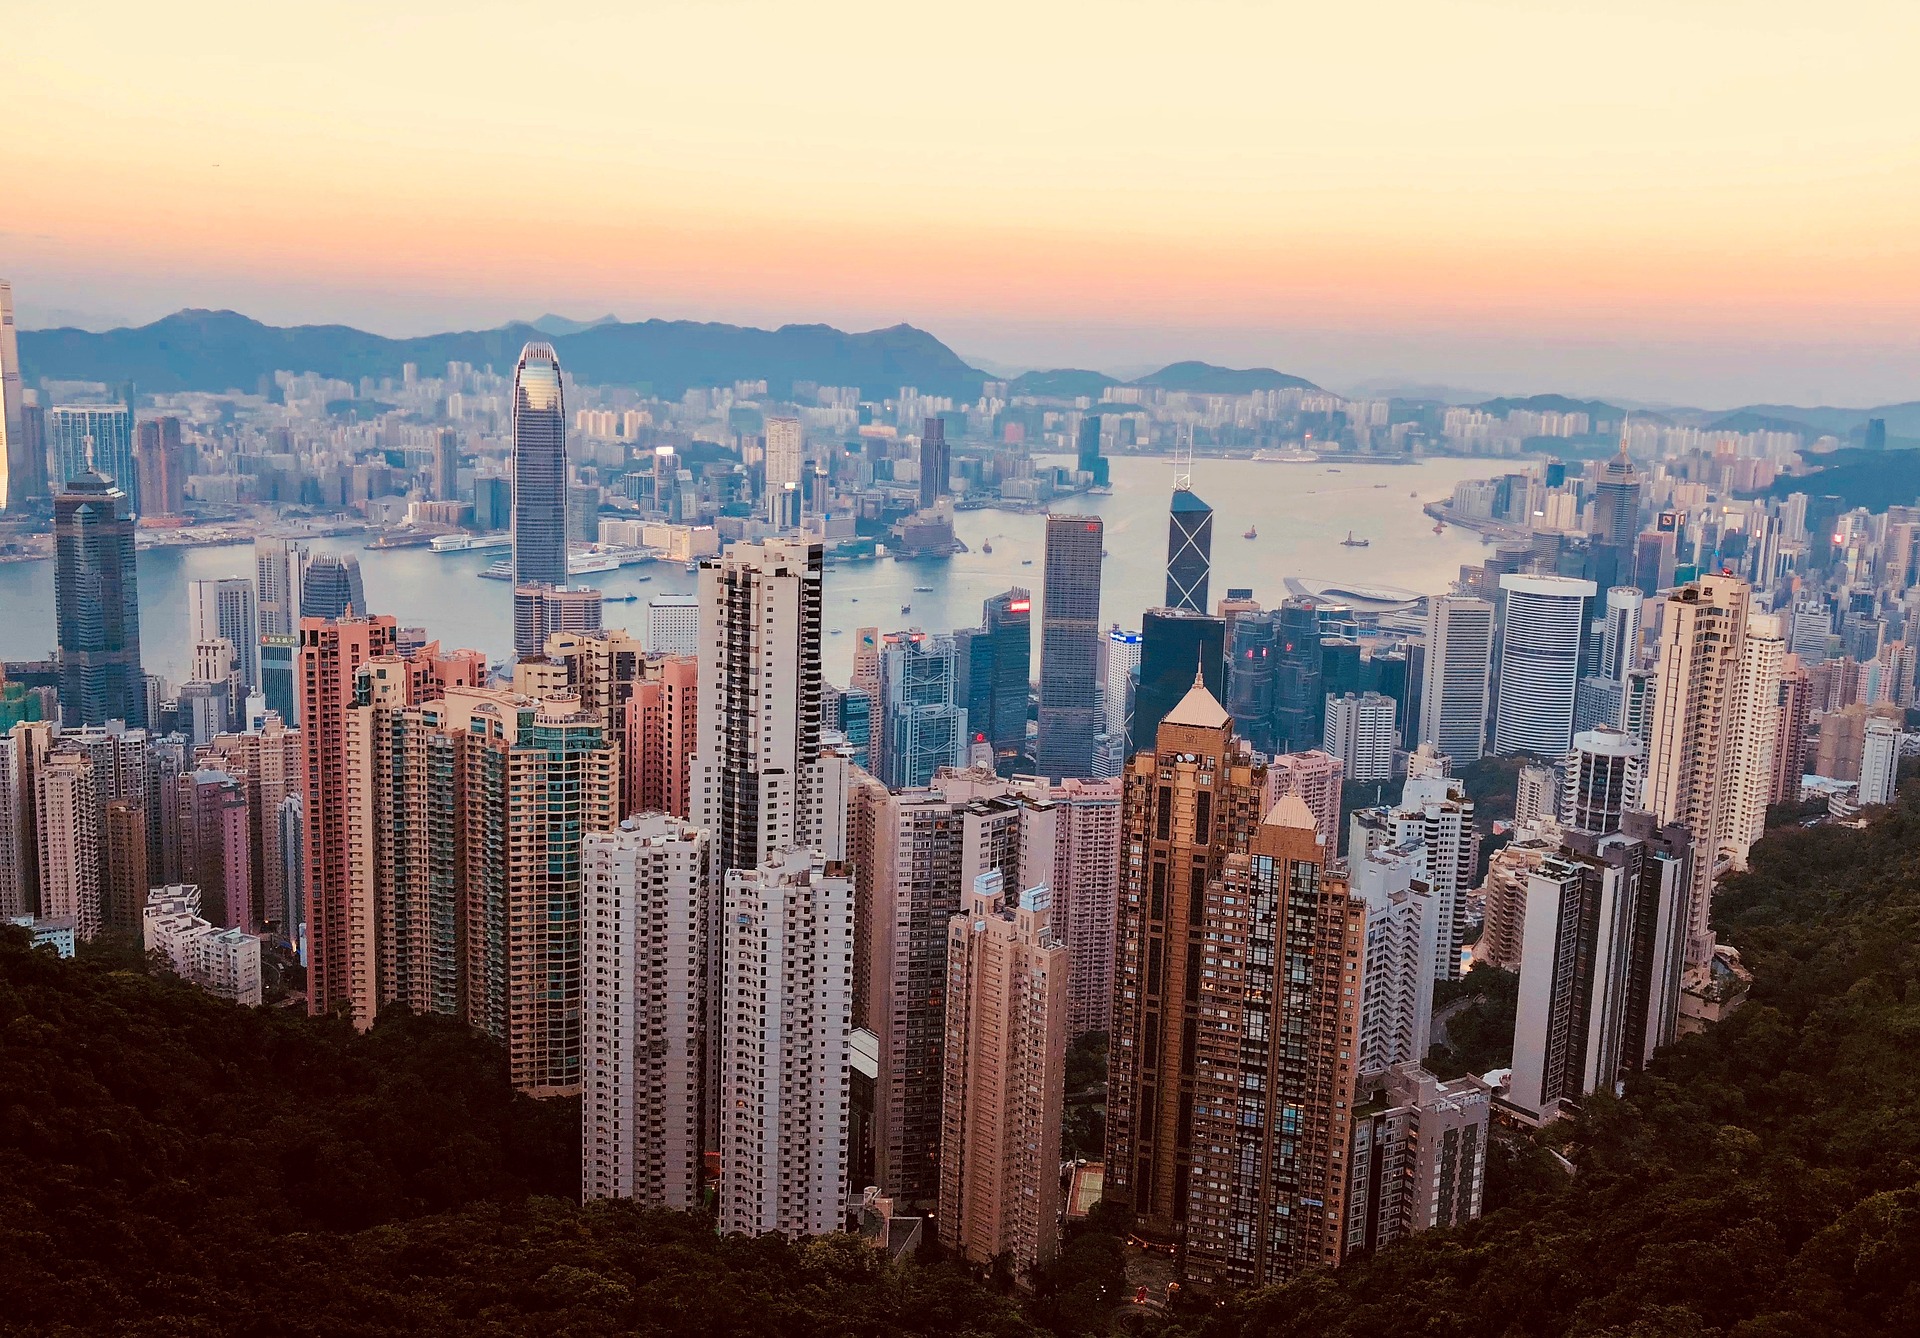 Plus de 7 millions de personnes vivent à Hong Kong, ce qui en fait l'une des régions les plus densément peuplées du monde. (Image: Nextvoyage / Pixabay.com)